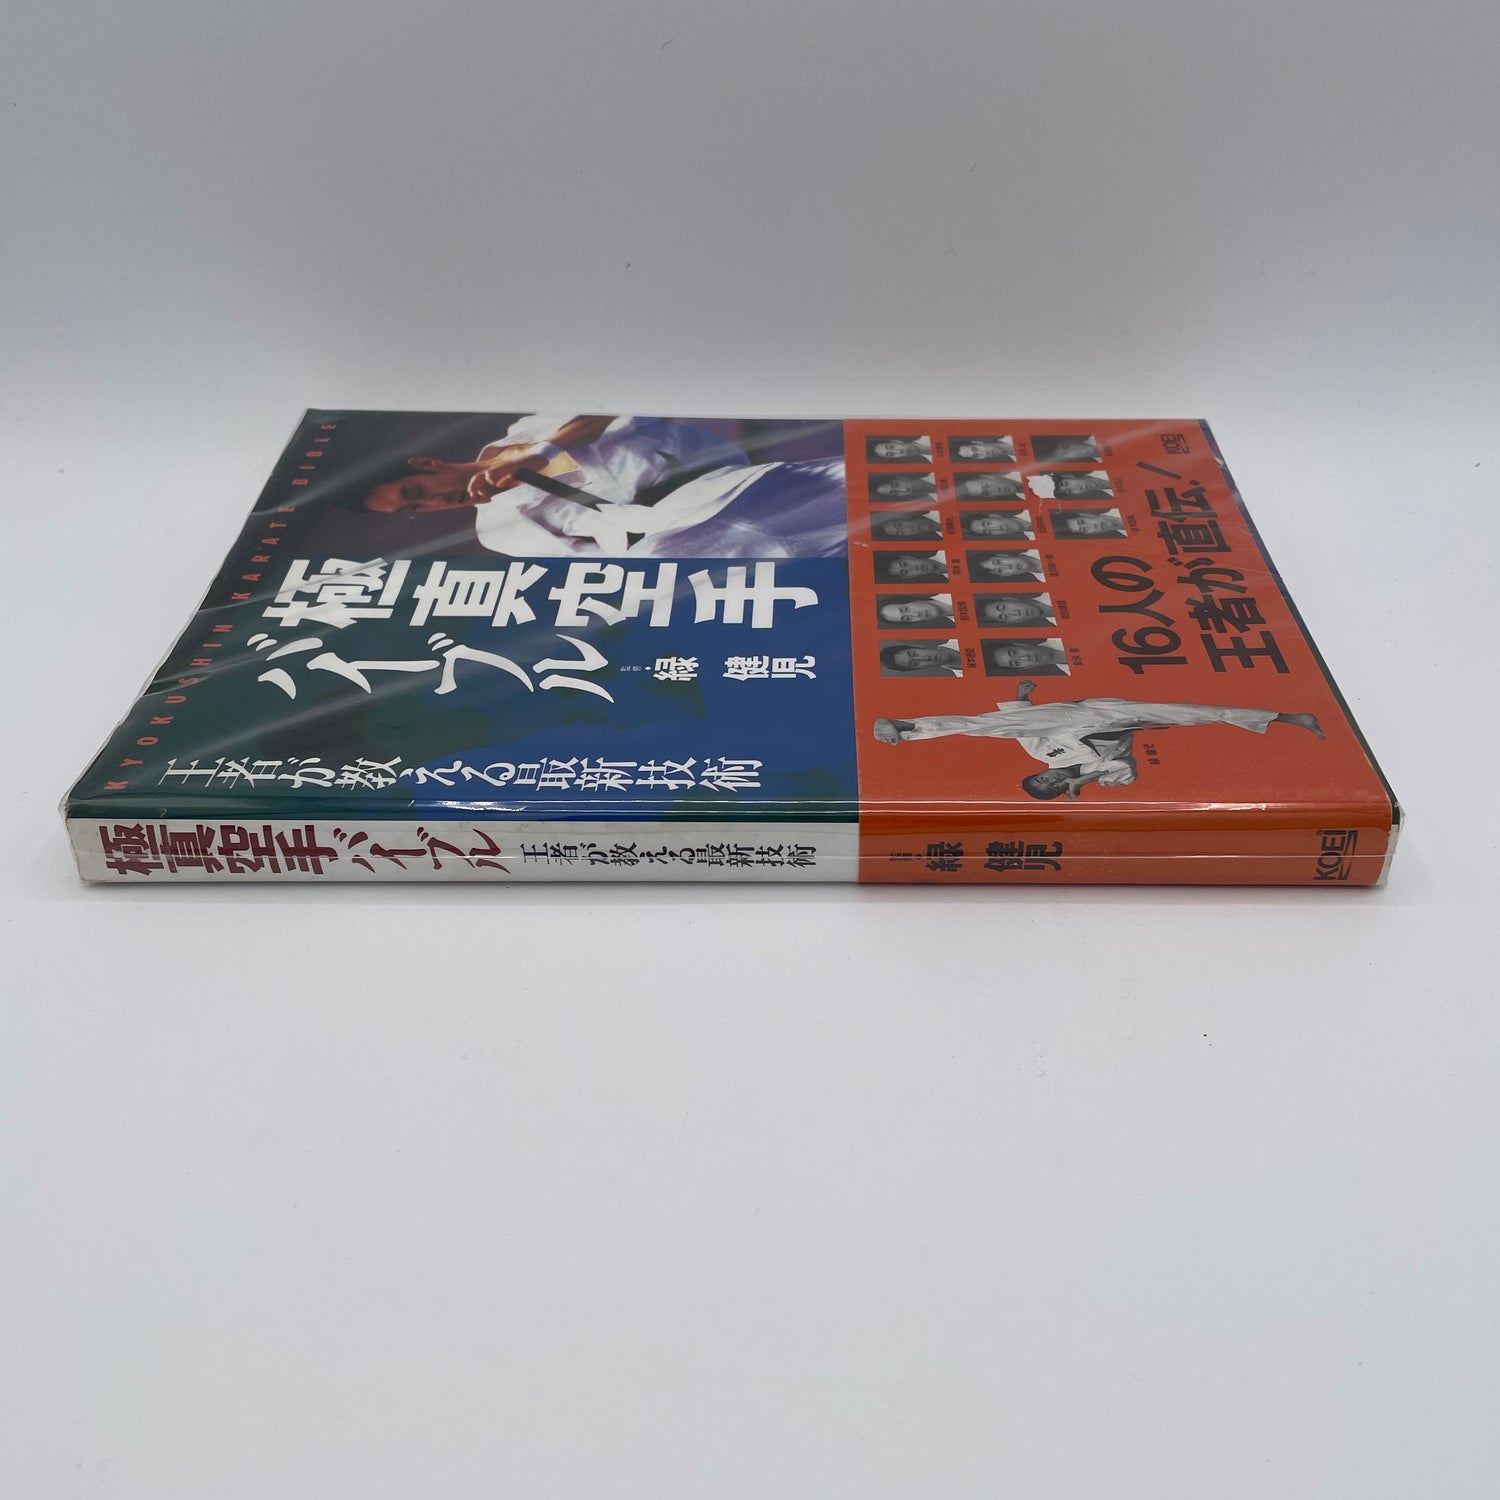 Biblia de Karate Kyokushin de Kenji Midori (usada)